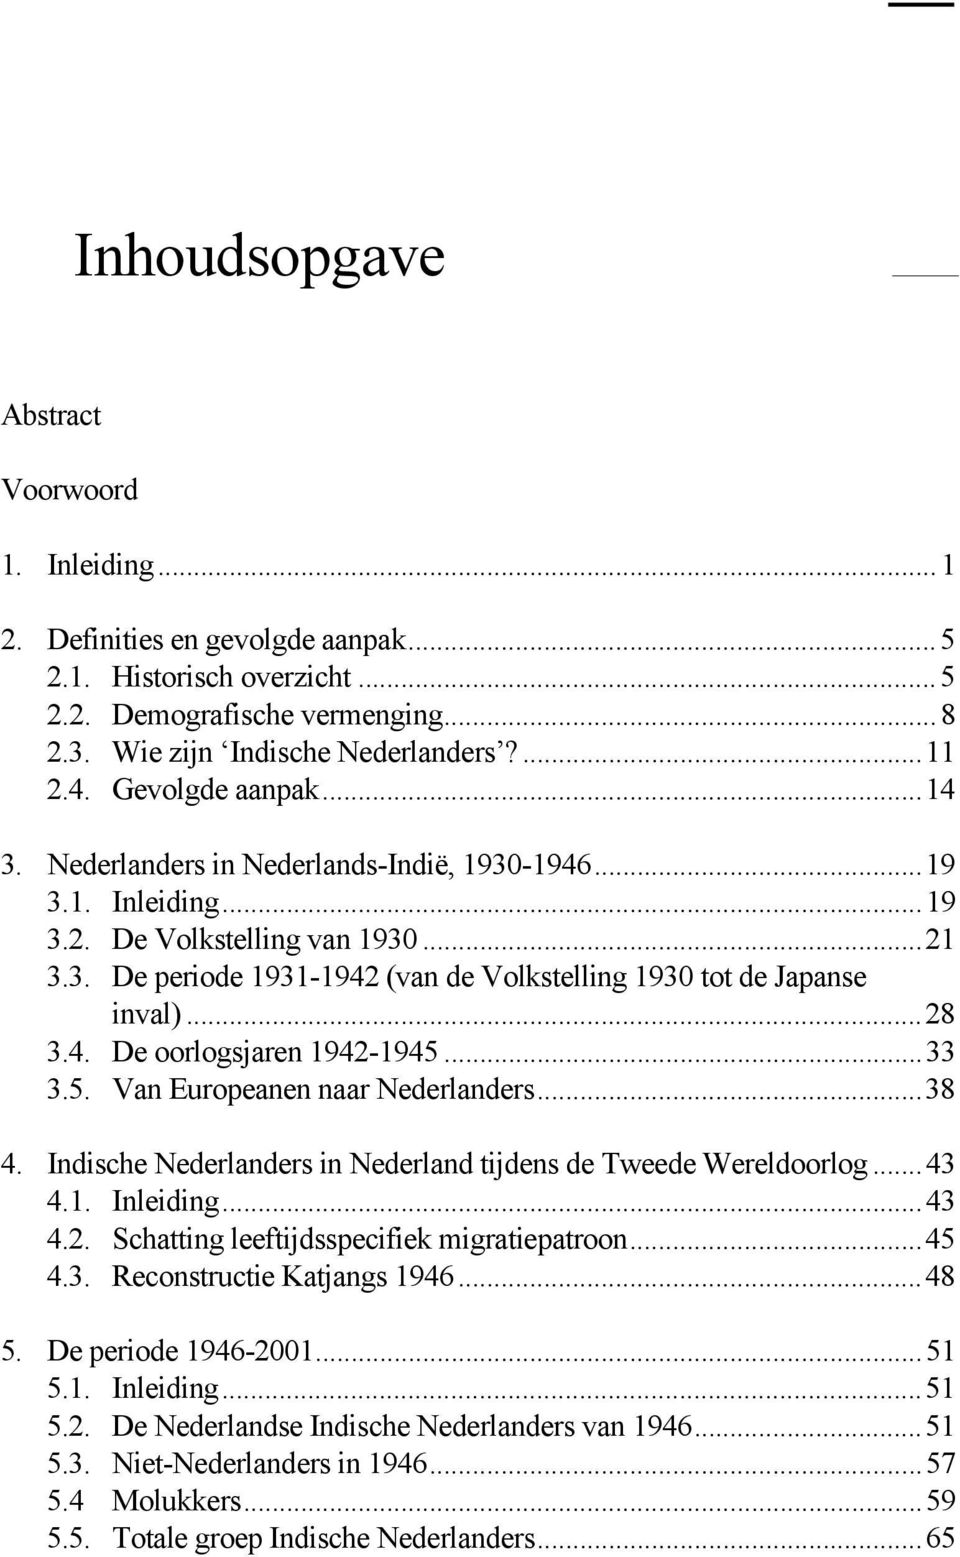 ..28 3.4. De oorlogsjaren 1942-1945...33 3.5. Van Europeanen naar Nederlanders...38 4. Indische Nederlanders in Nederland tijdens de Tweede Wereldoorlog...43 4.1. Inleiding...43 4.2. Schatting leeftijdsspecifiek migratiepatroon.